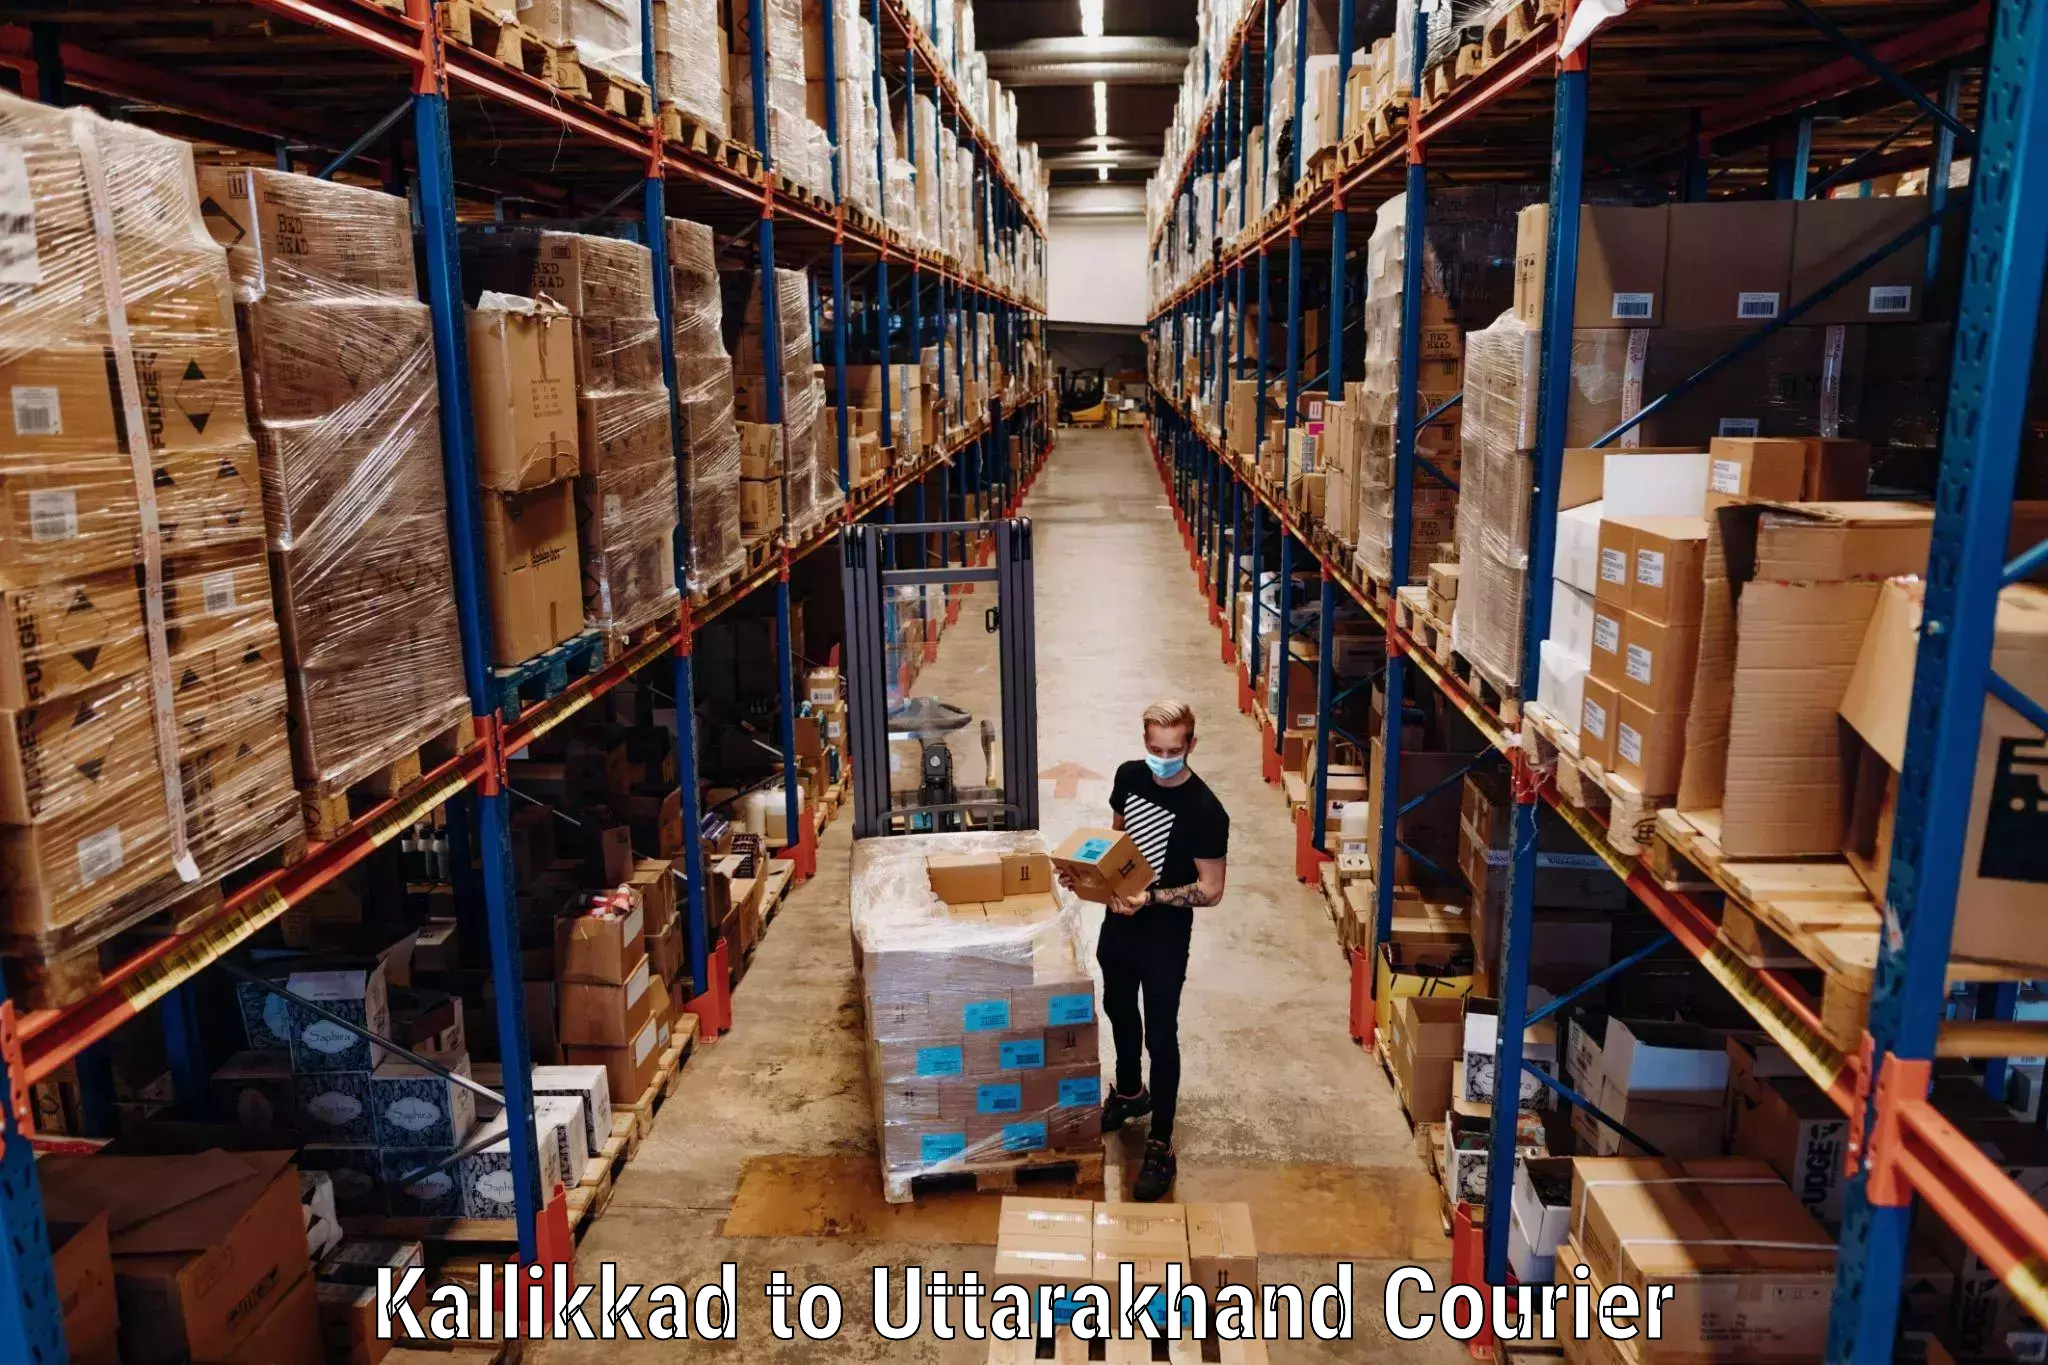 Comprehensive baggage service Kallikkad to IIT Roorkee